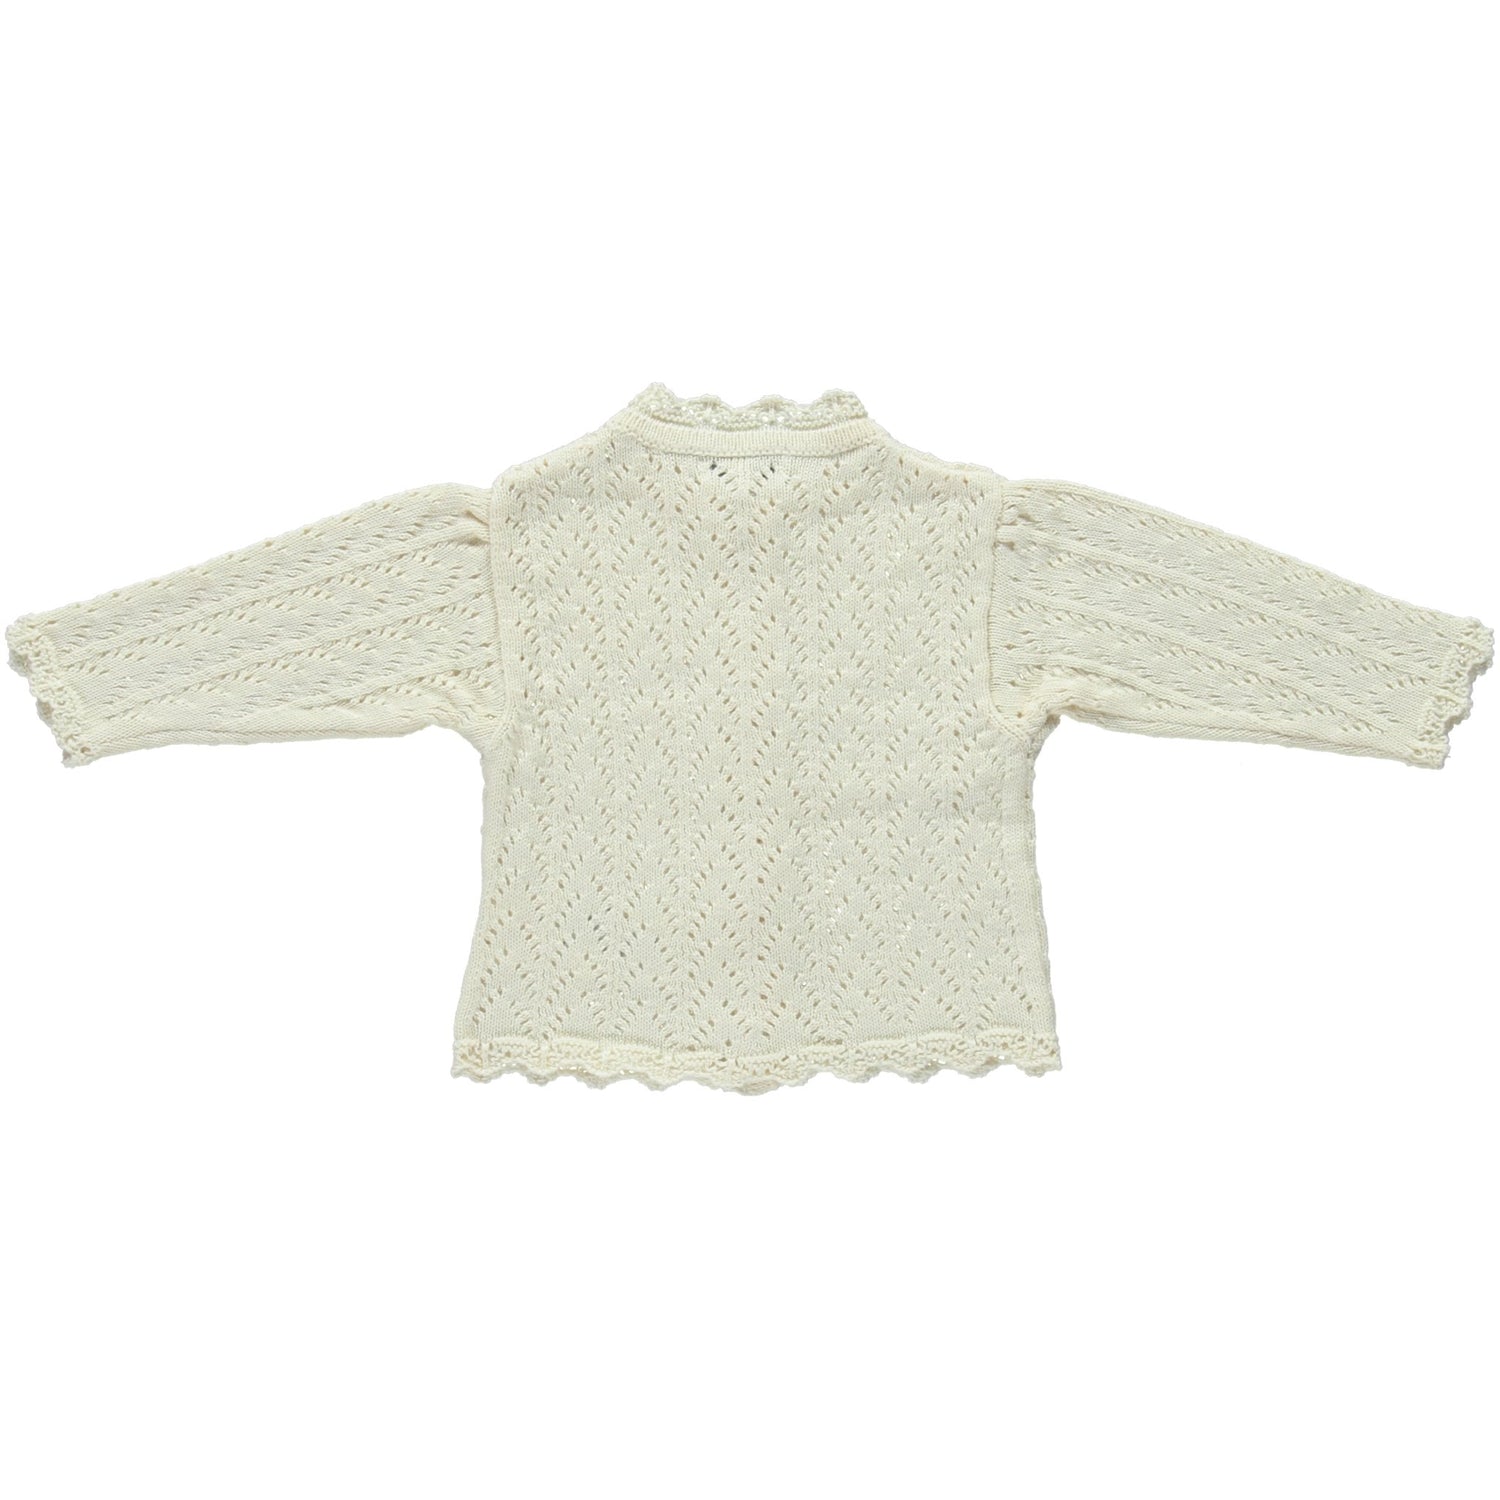 Mabel cardigan Knitwear Bebe Organic 